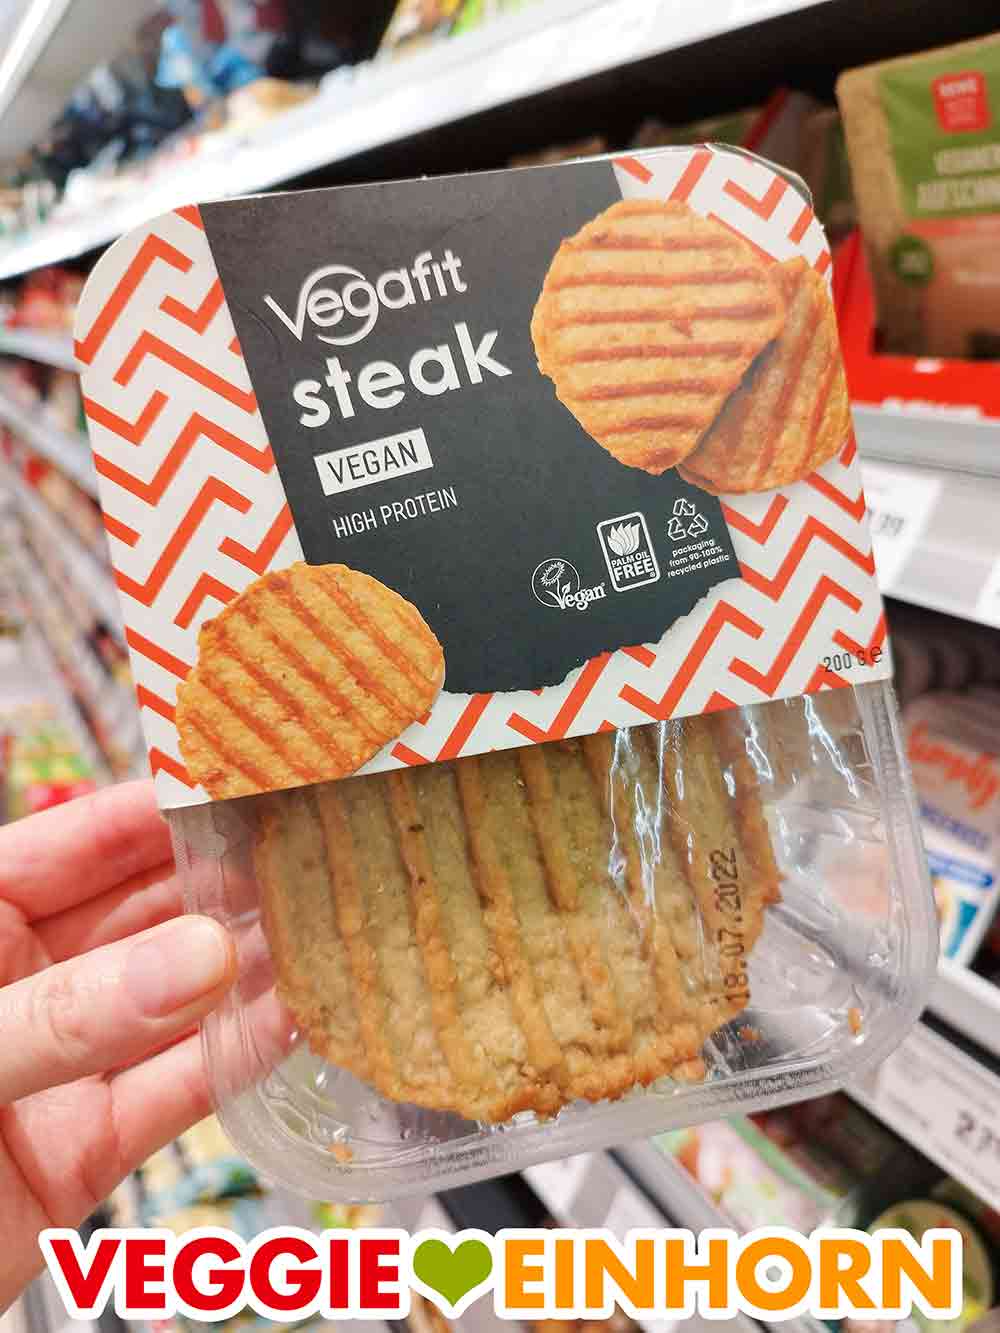 Eine Hand hält eine Packung Vegafit Steaks im Supermarkt